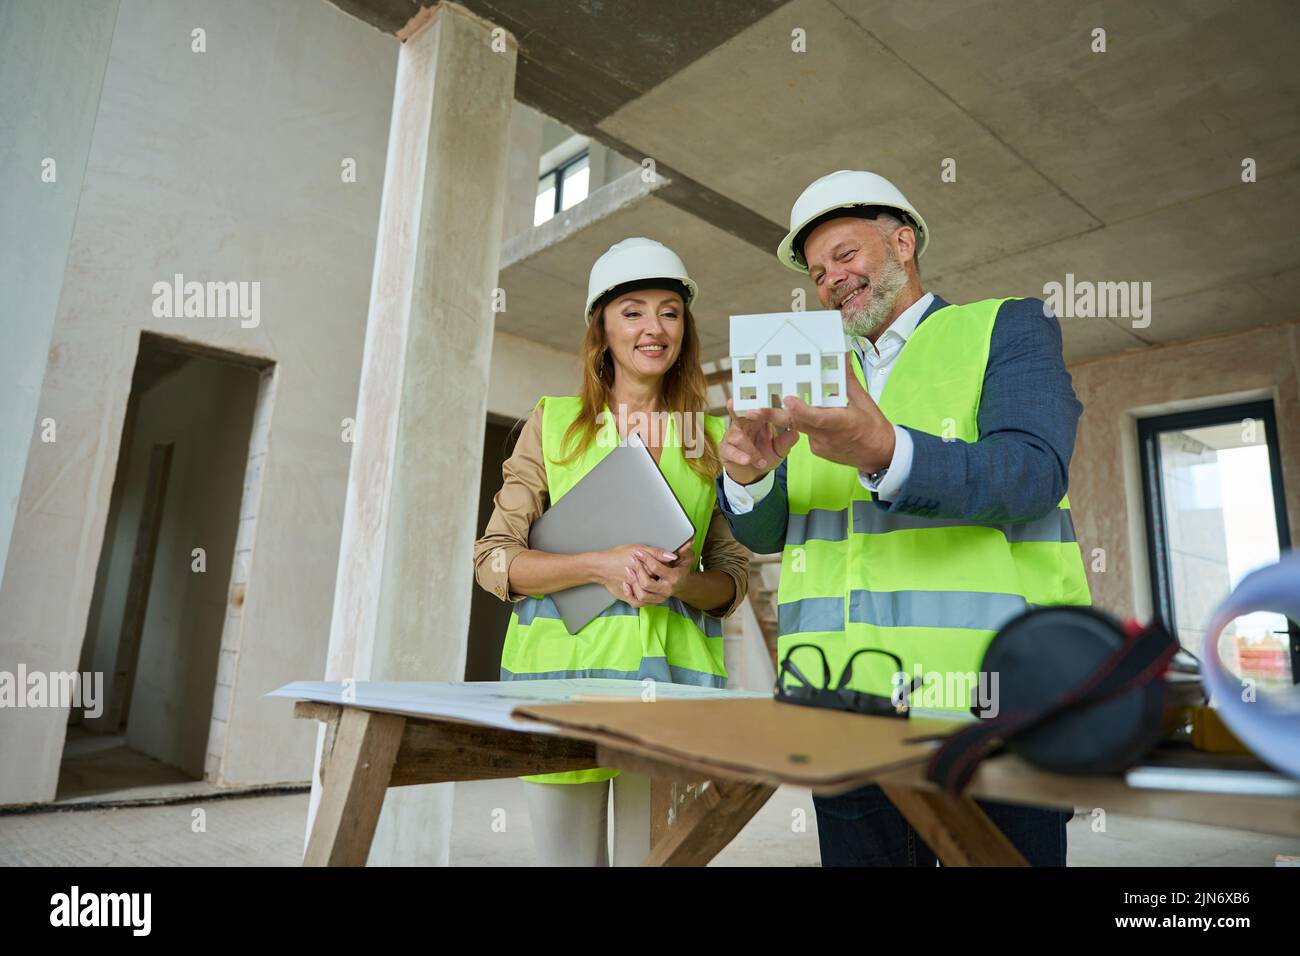 Alegre capataz mostrando agente inmobiliario con computadora portátil en casa miniatura de la mano Foto de stock